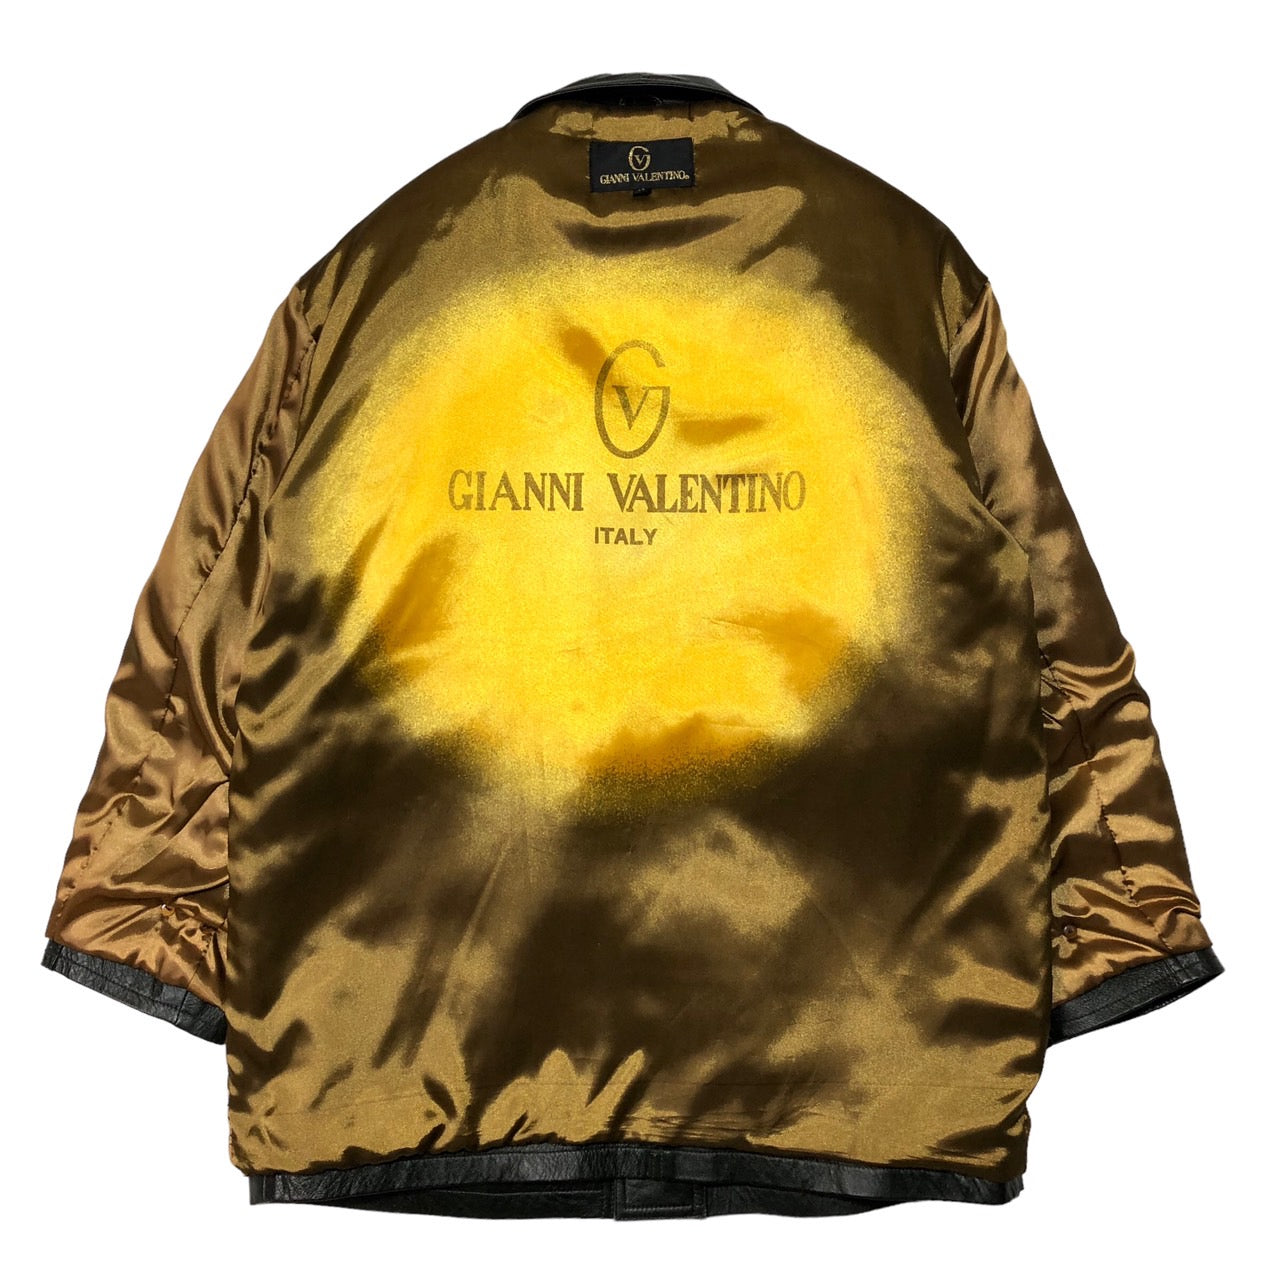 GIANNI VALENTINO(ジャンバレンティノ) 90's ロゴナイナーレザーコート/ヴィンテージレザージャケット XLサイズ程度 ブラック